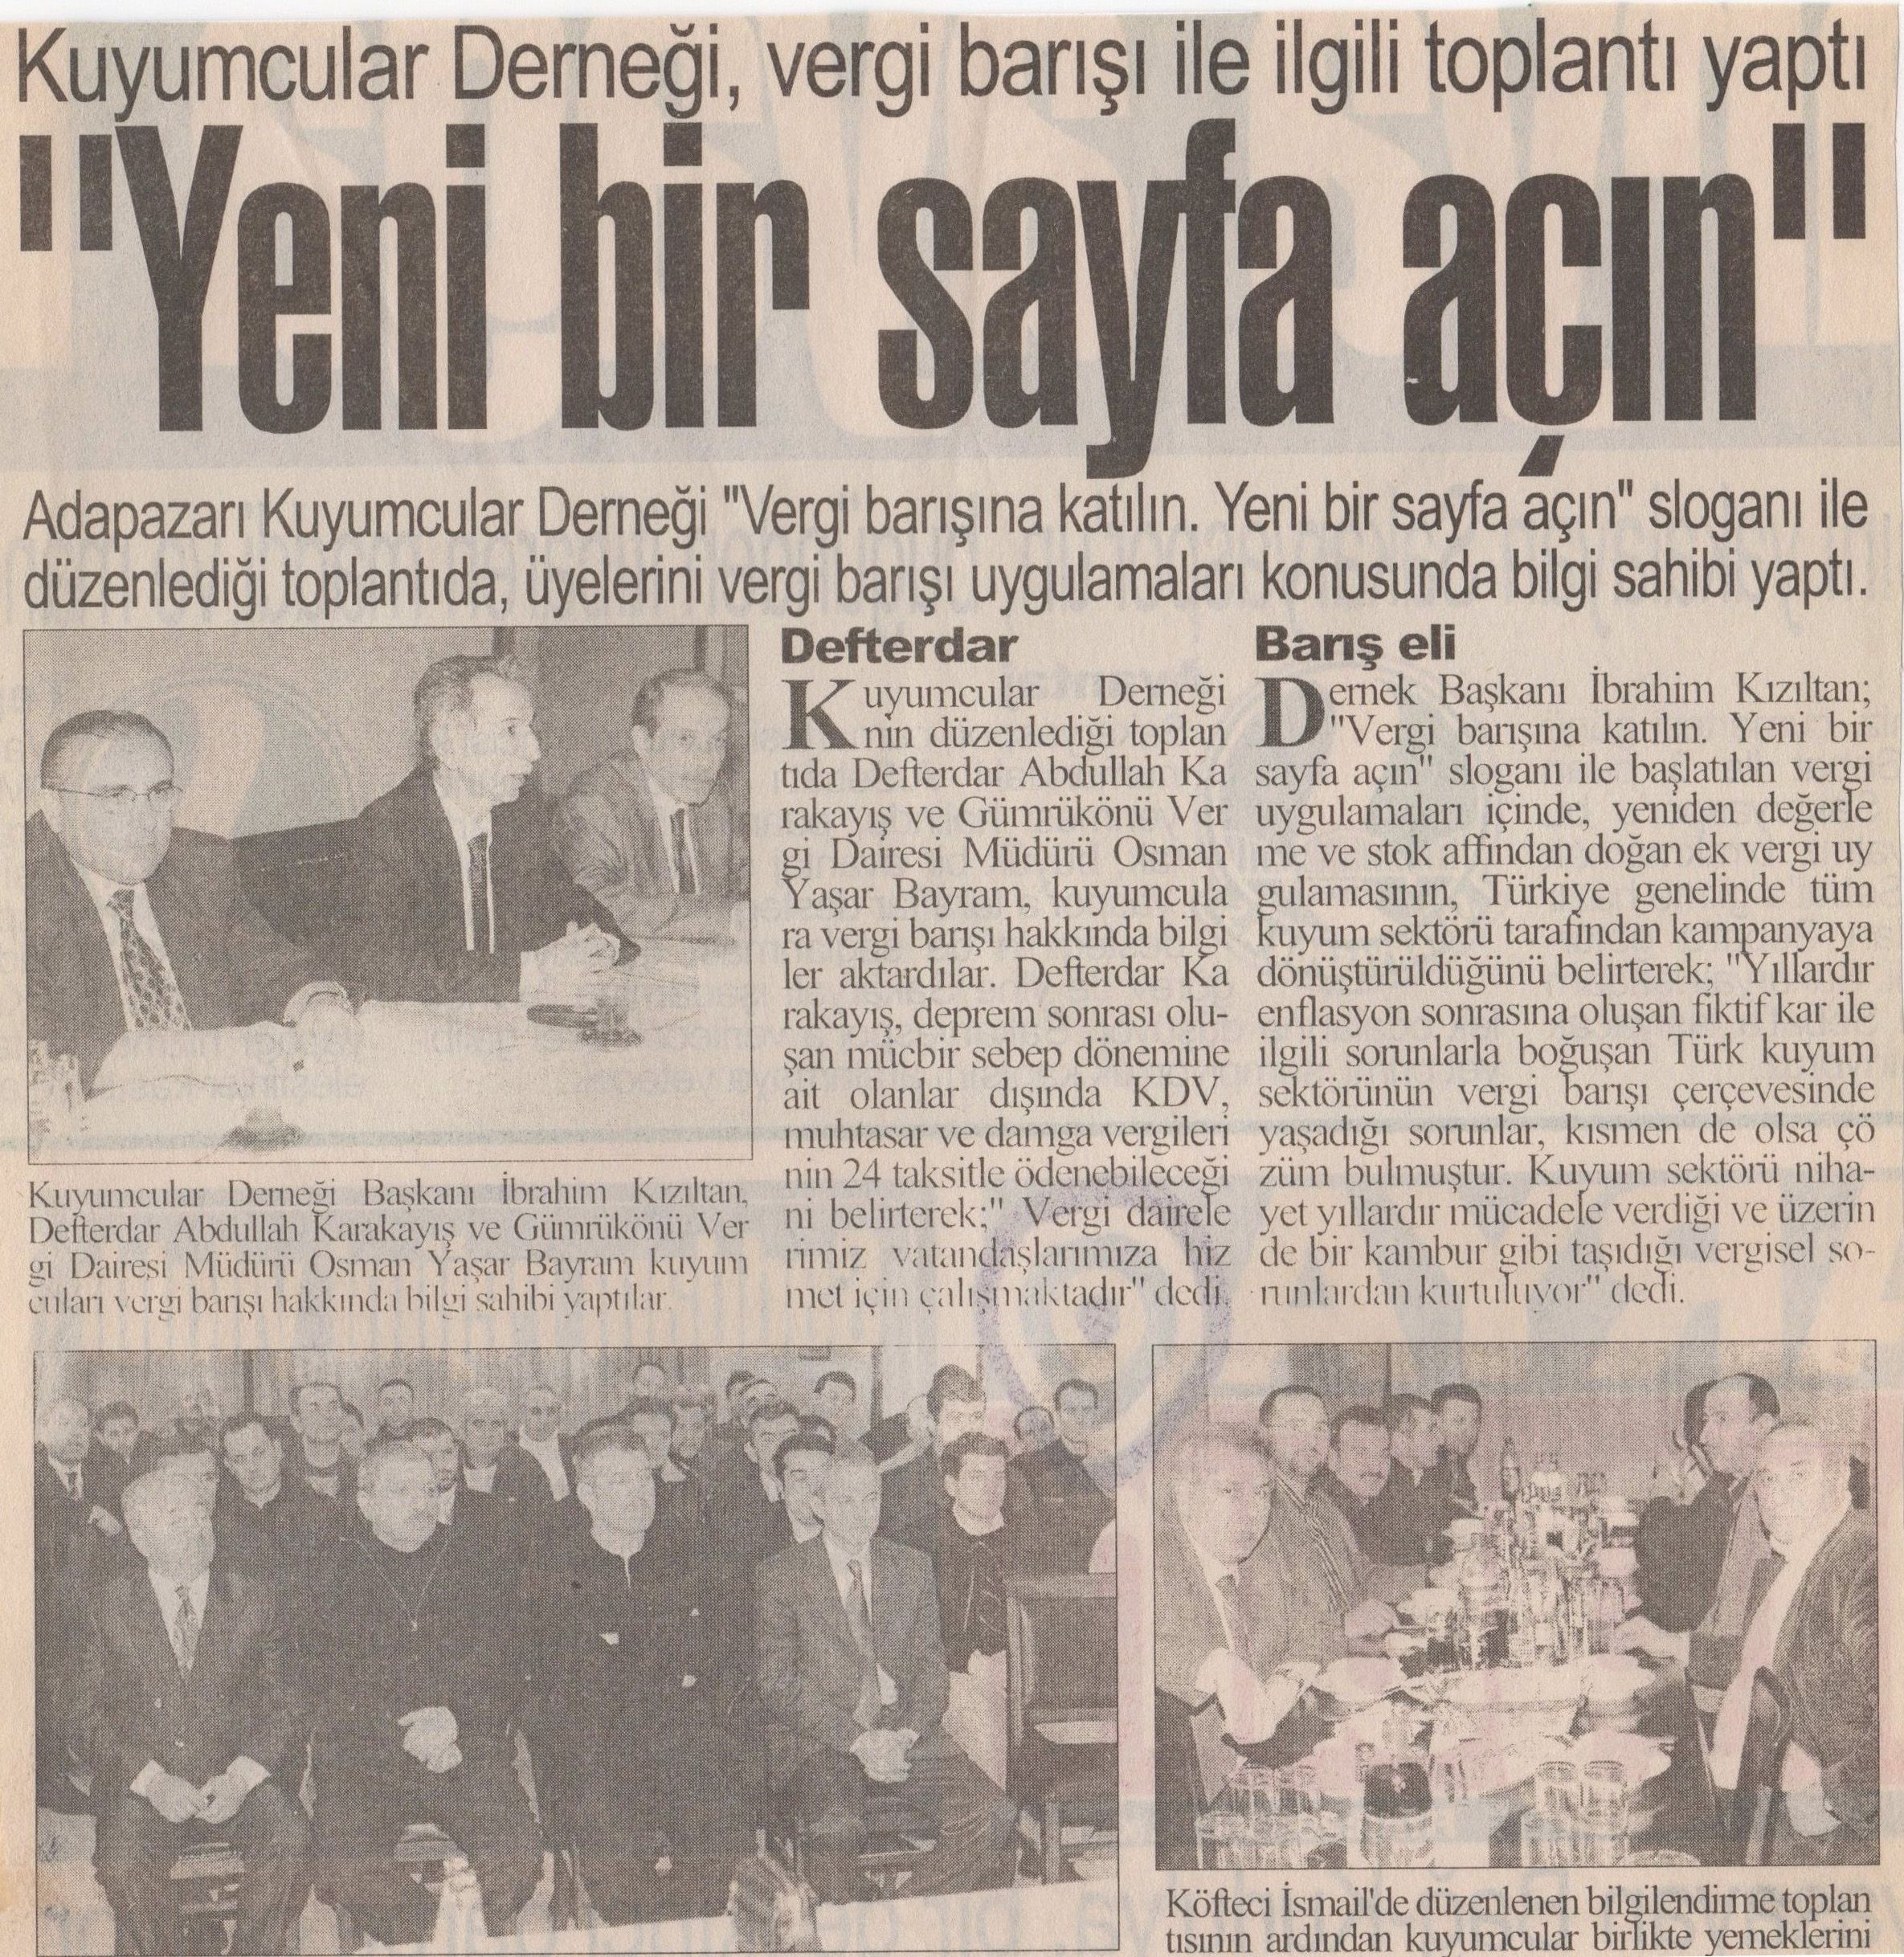 10 Nisan 2003 İbrahim Kızıltan - Kuyumcular Derneği Vergi Barışı İle İlgili Toplantı Yaptı